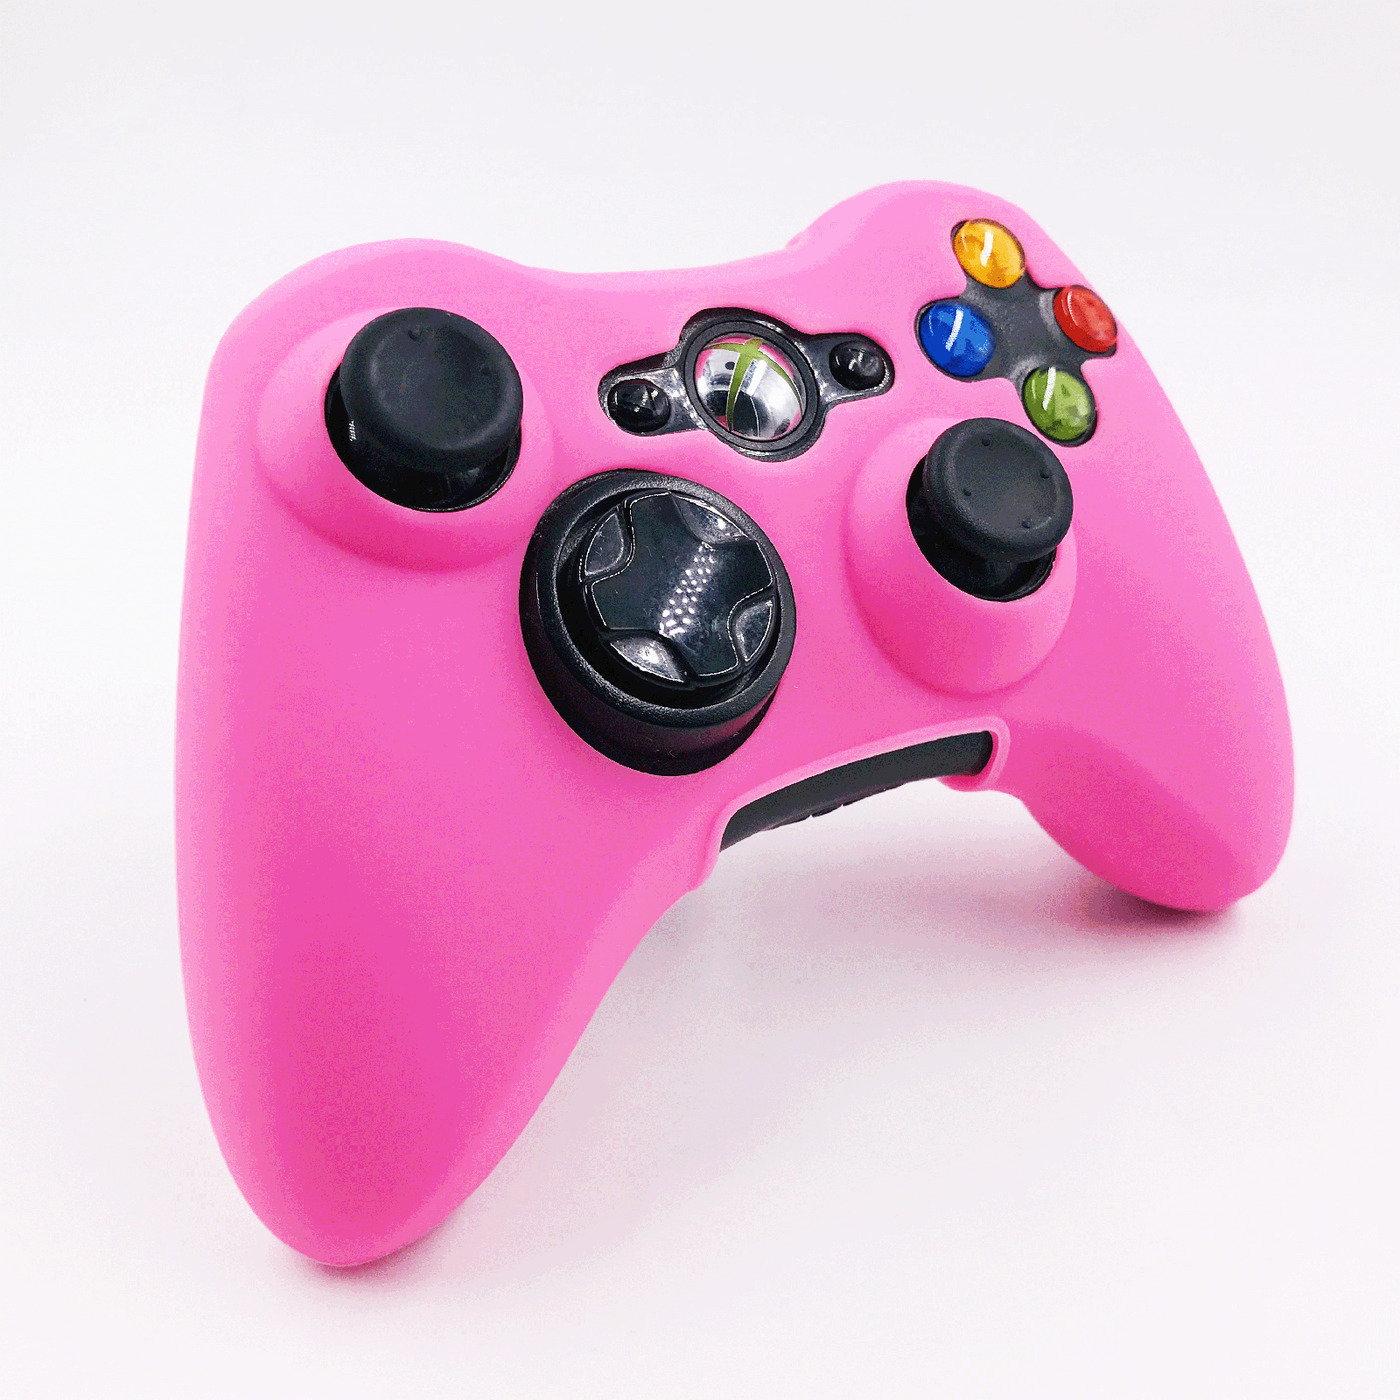 чехол на геймпад xbox 360 розовый pinkполное силиконовое покрытие  защита от ударов